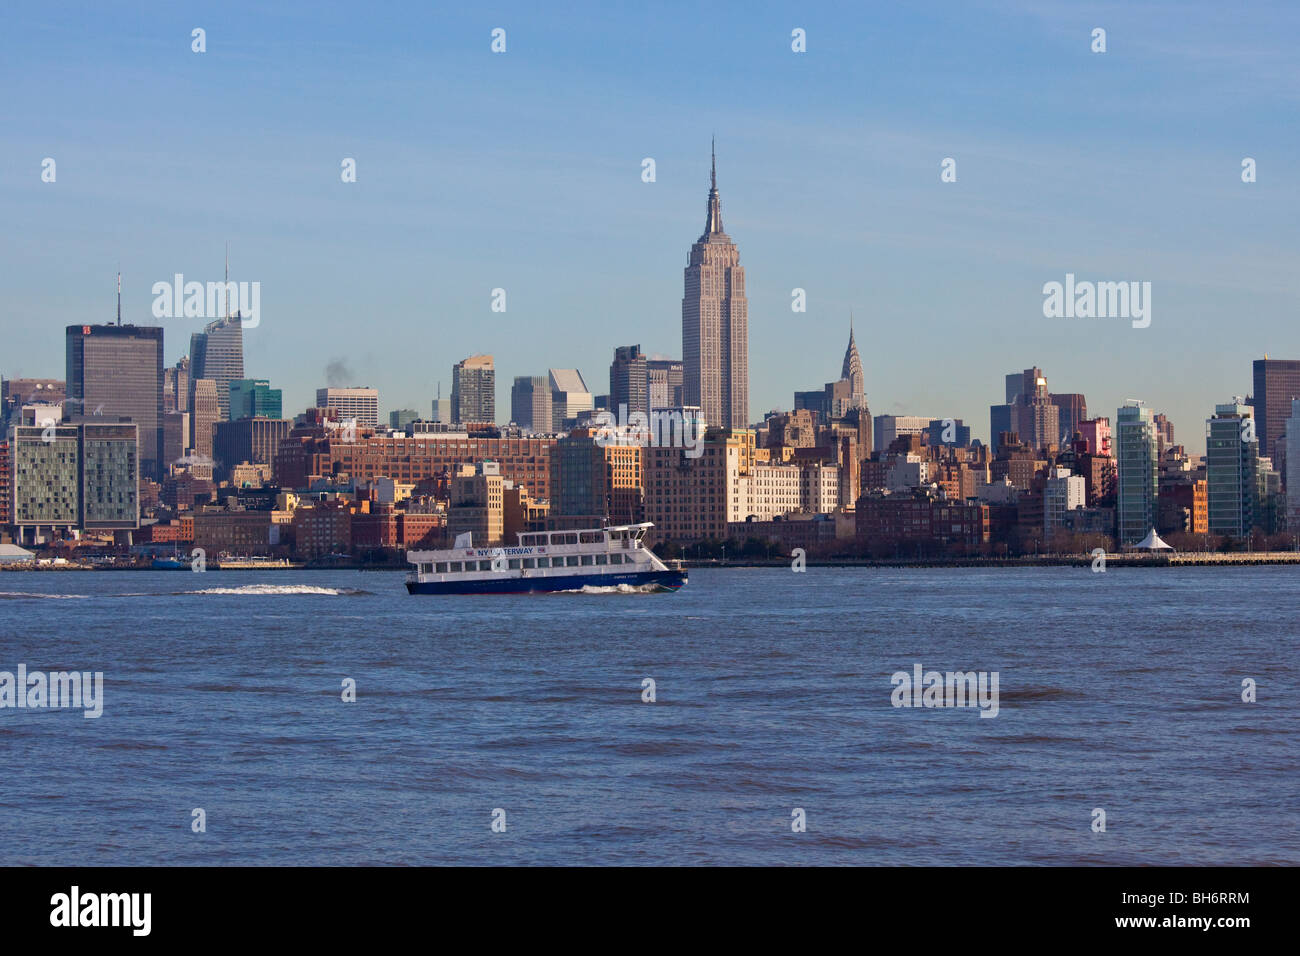 NY Hidrovías Ferry y horizonte de Manhattan, Ciudad de Nueva York Foto de stock